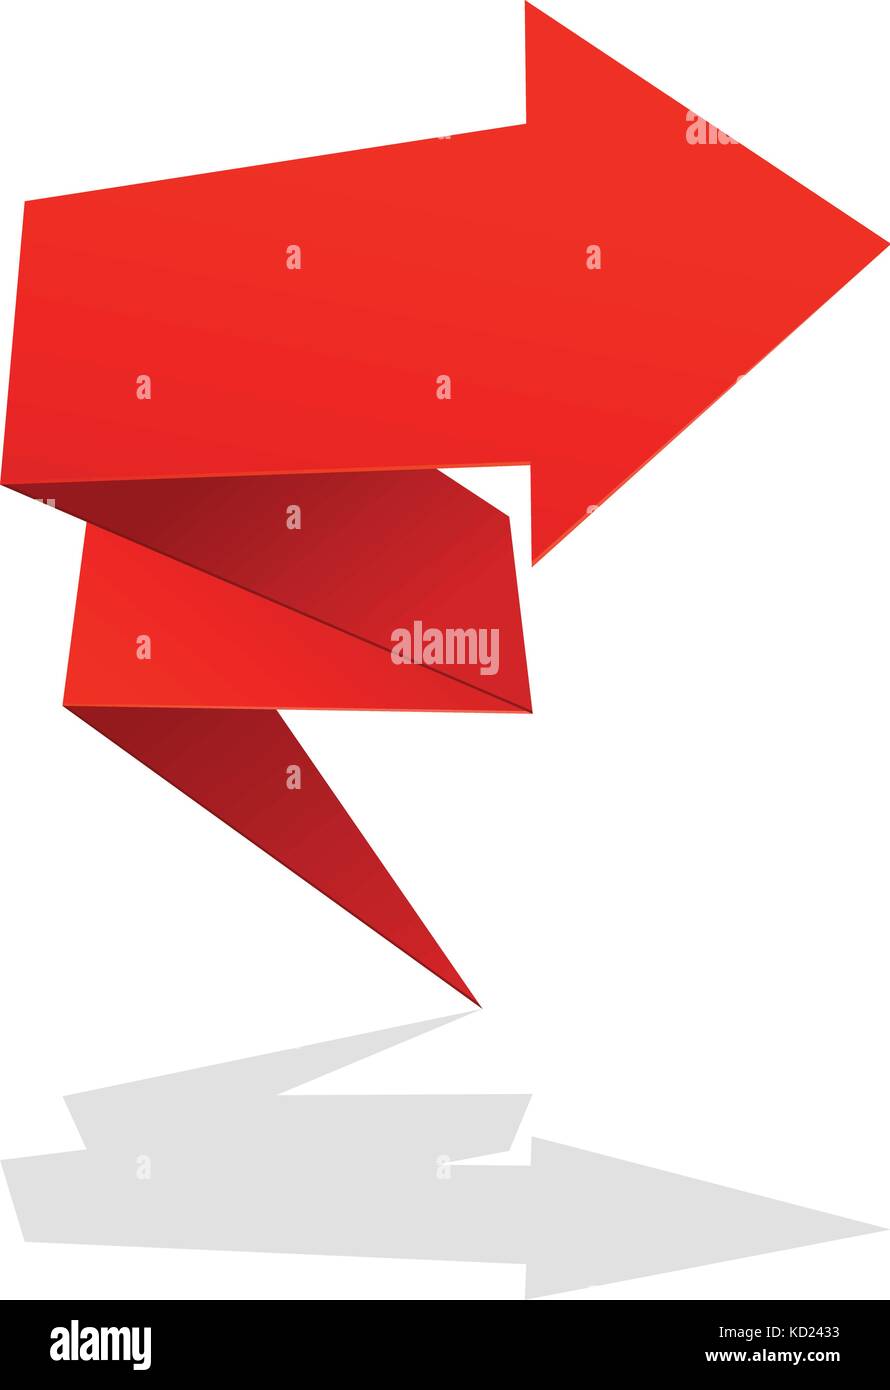 L'icône flèche pliée rouge - symbole de hausse du marché Illustration de Vecteur